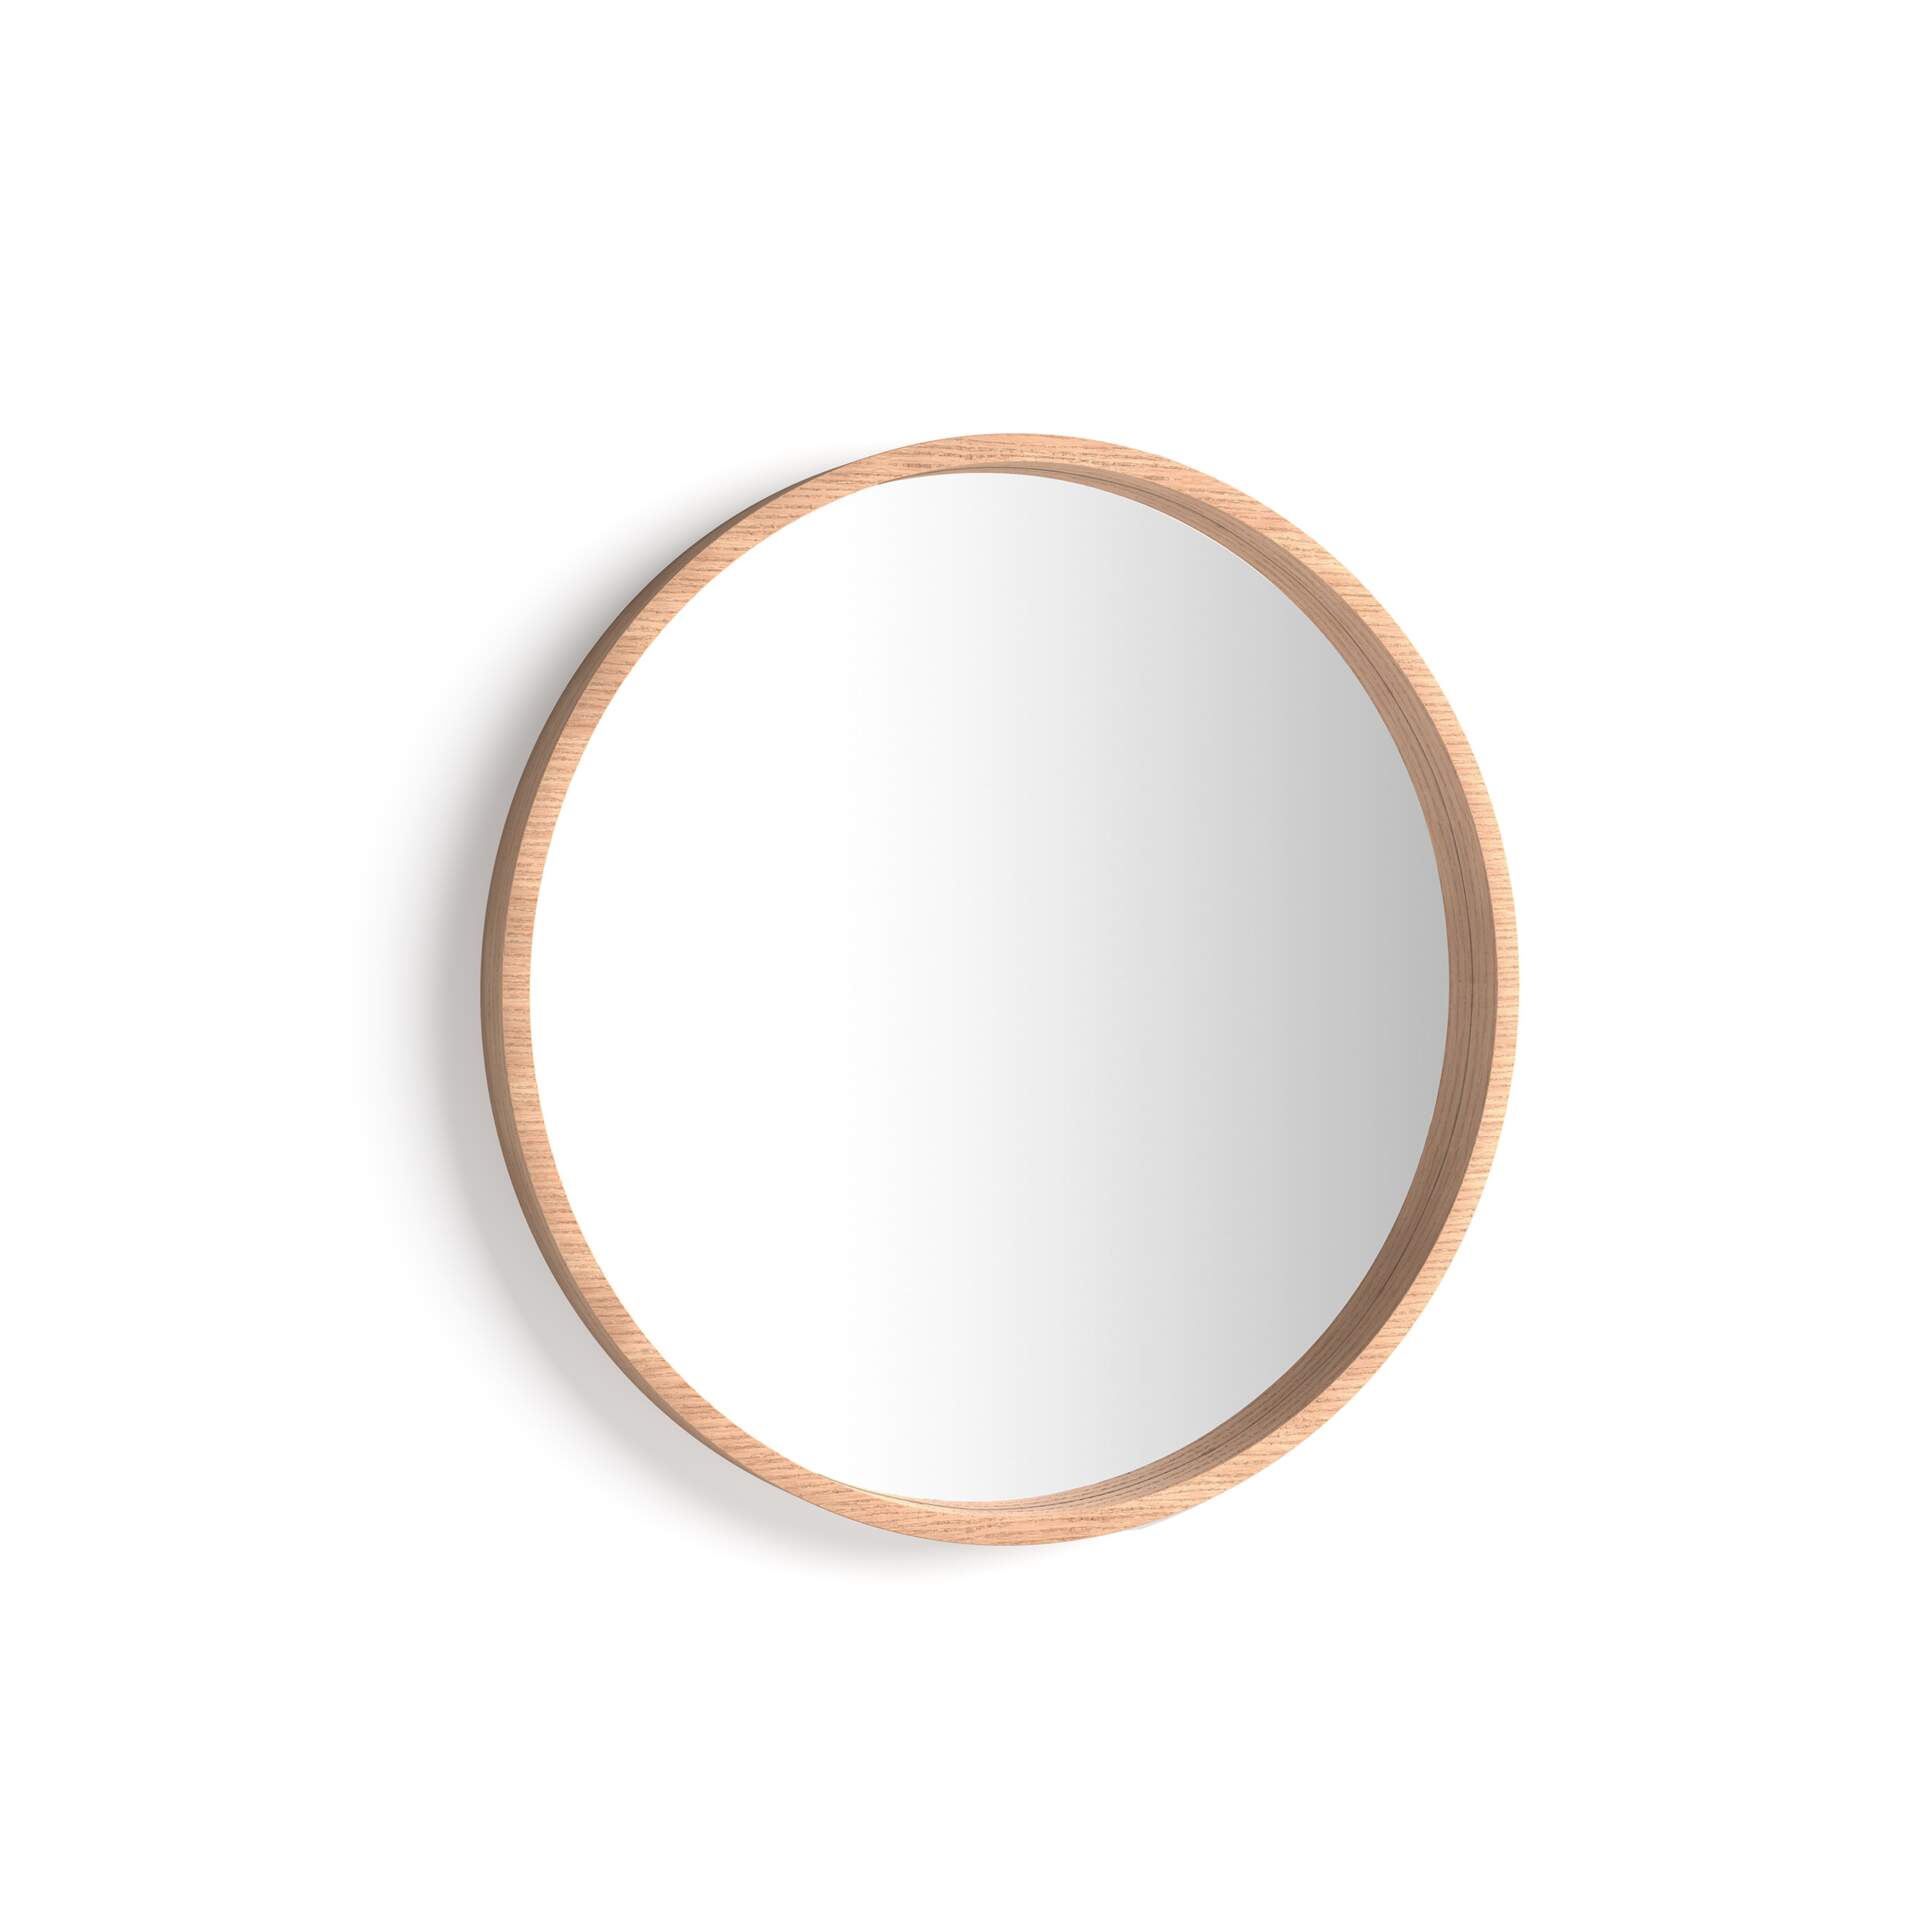 Mobili Fiver Specchio rotondo Olivia, diametro 64, Rovere Rustico